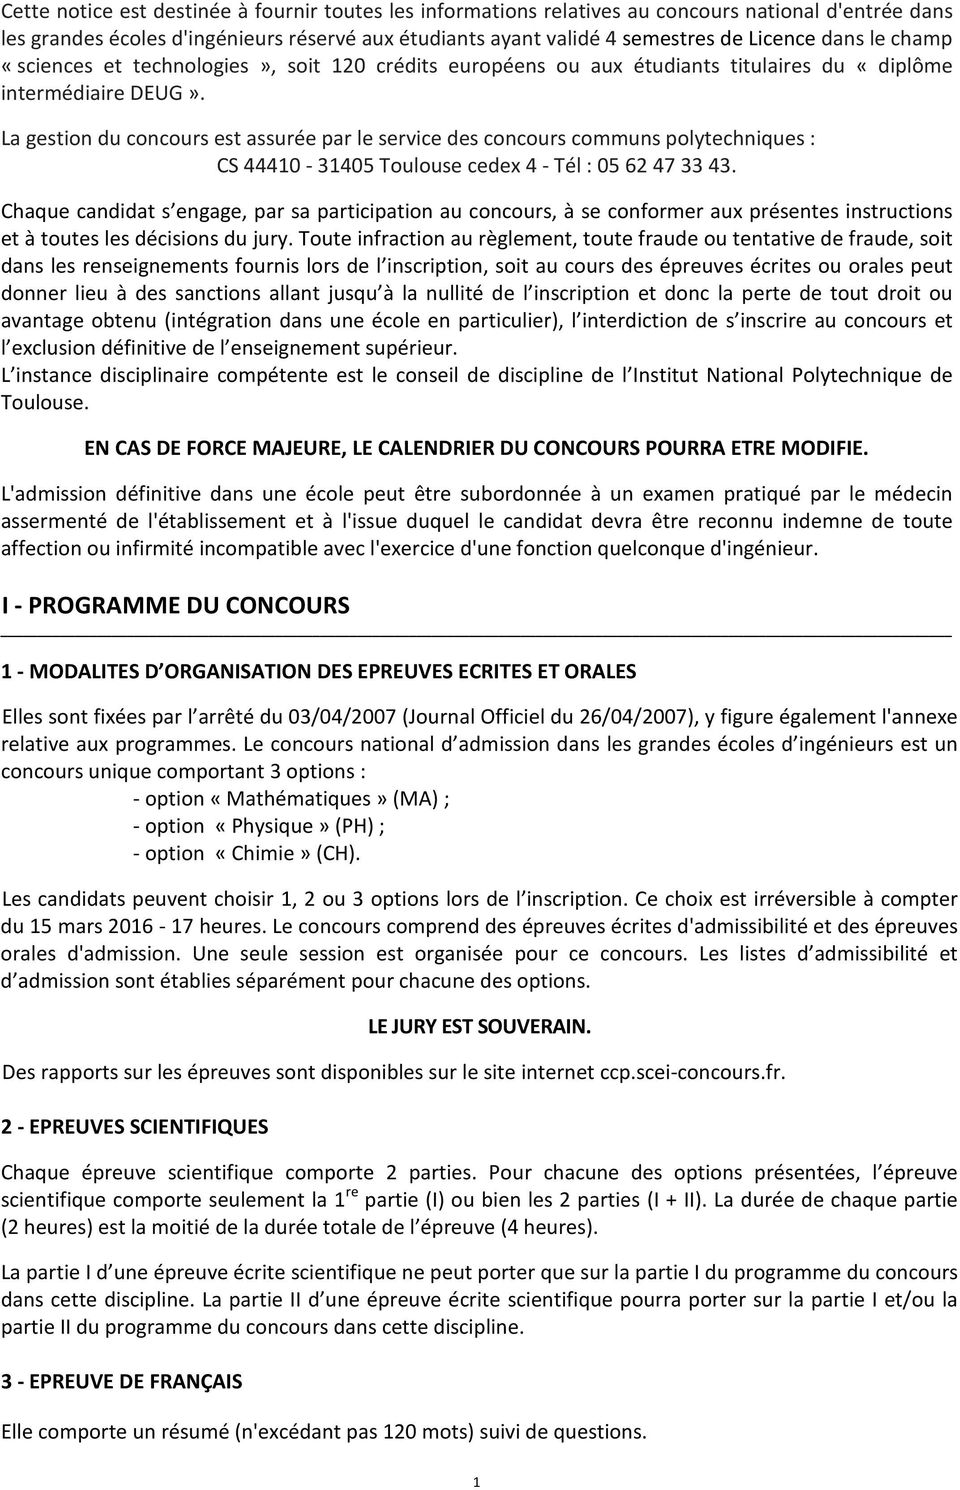 La gestion du concours est assurée par le service des concours communs polytechniques : CS 44410-31405 Toulouse cedex 4 - Tél : 05 62 47 33 43.